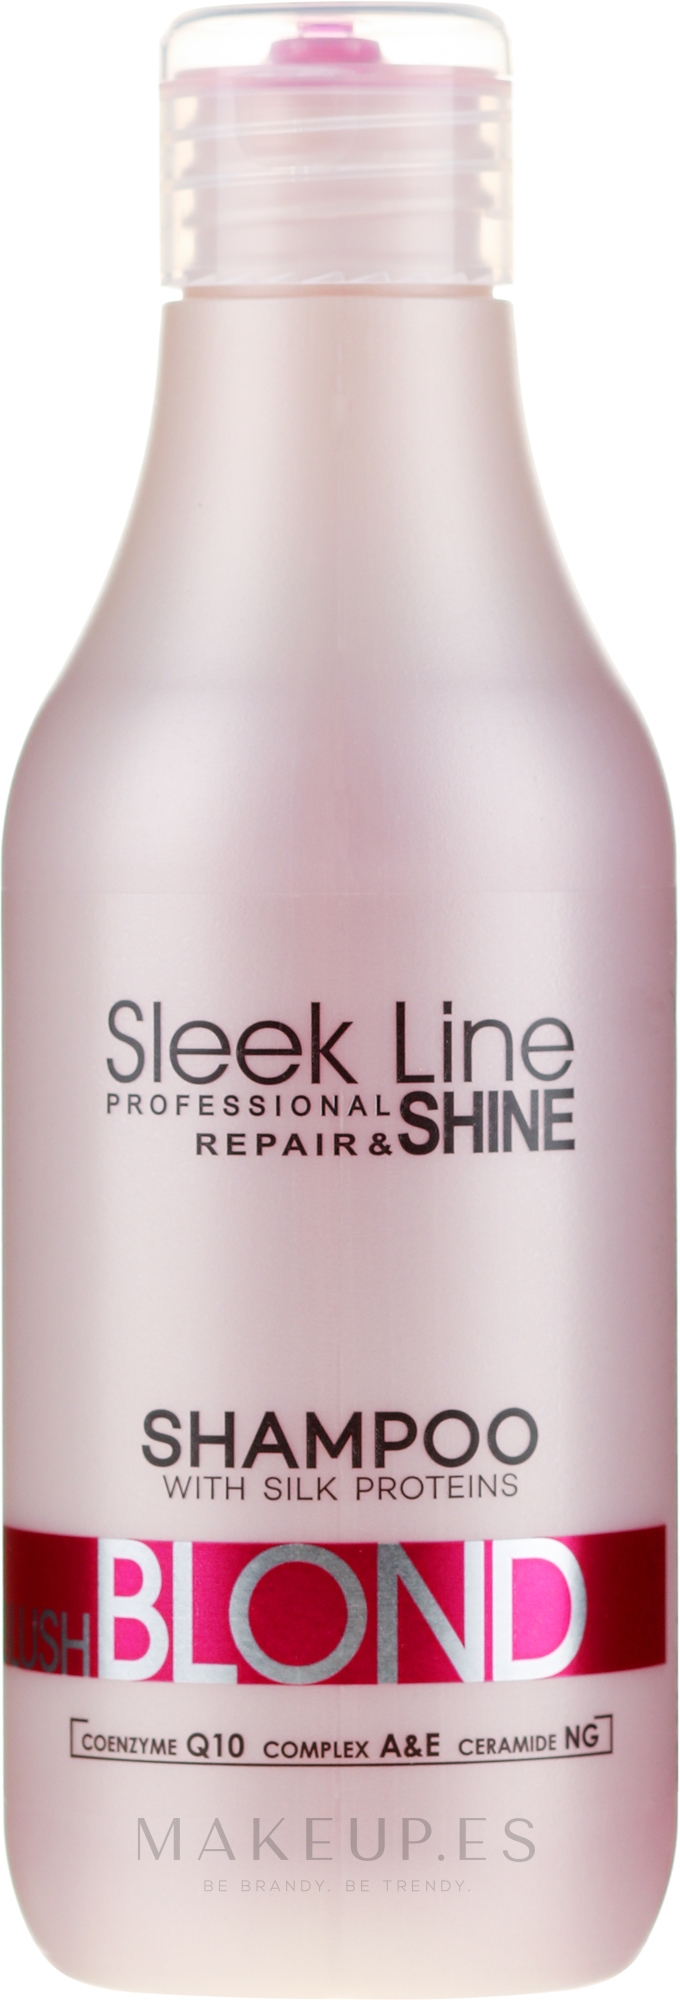 szampon sleek line repair 300 ml